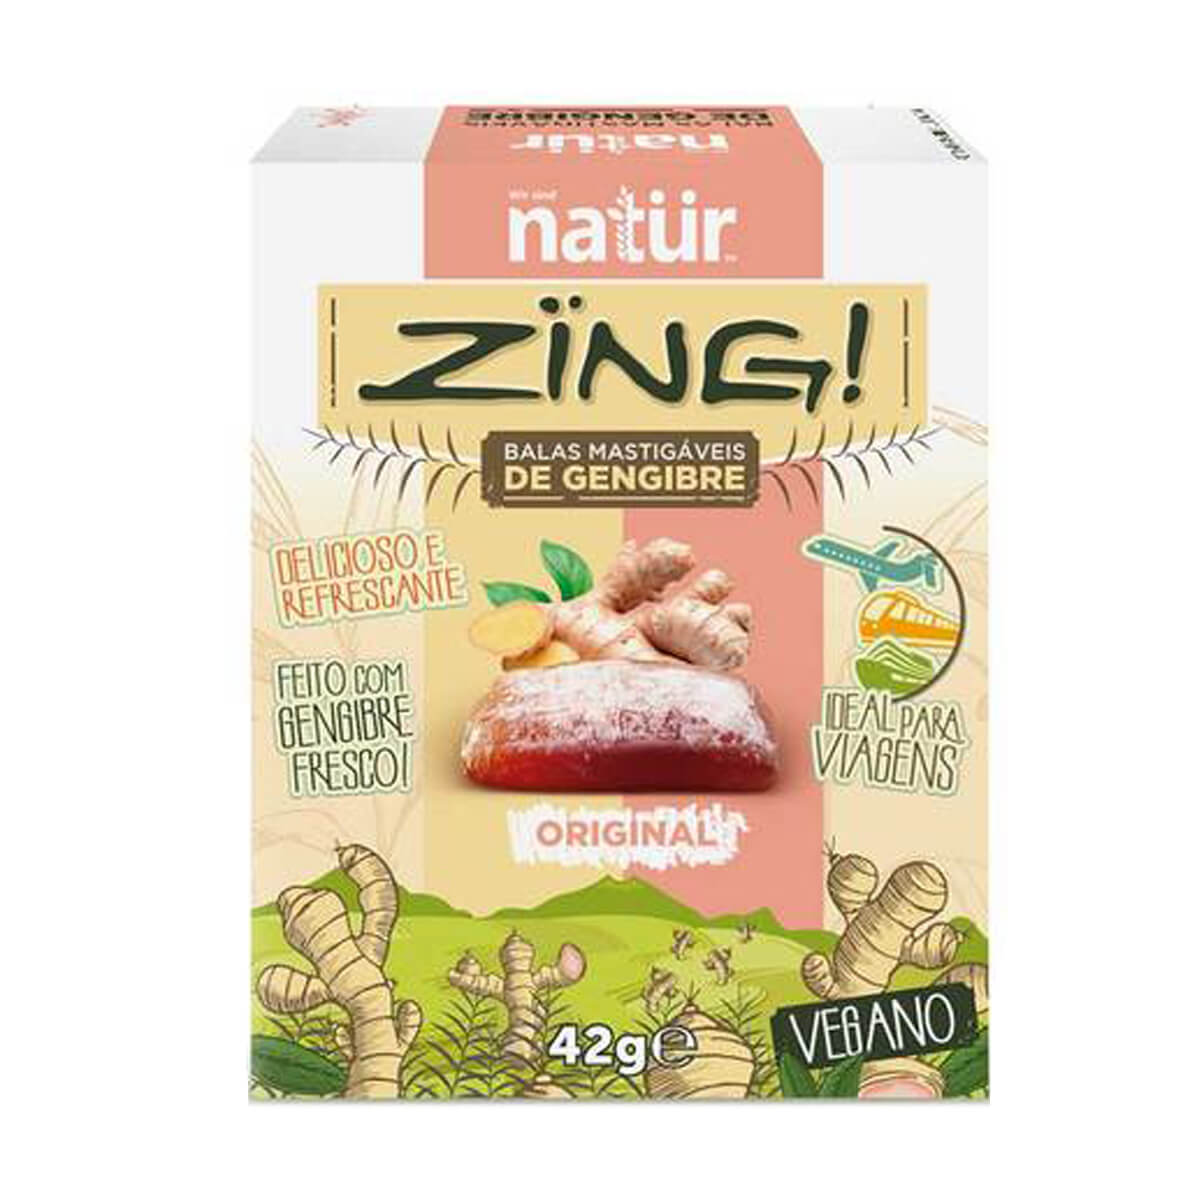 Bala Vegana de Gengibre Natur Zing Original com 42g